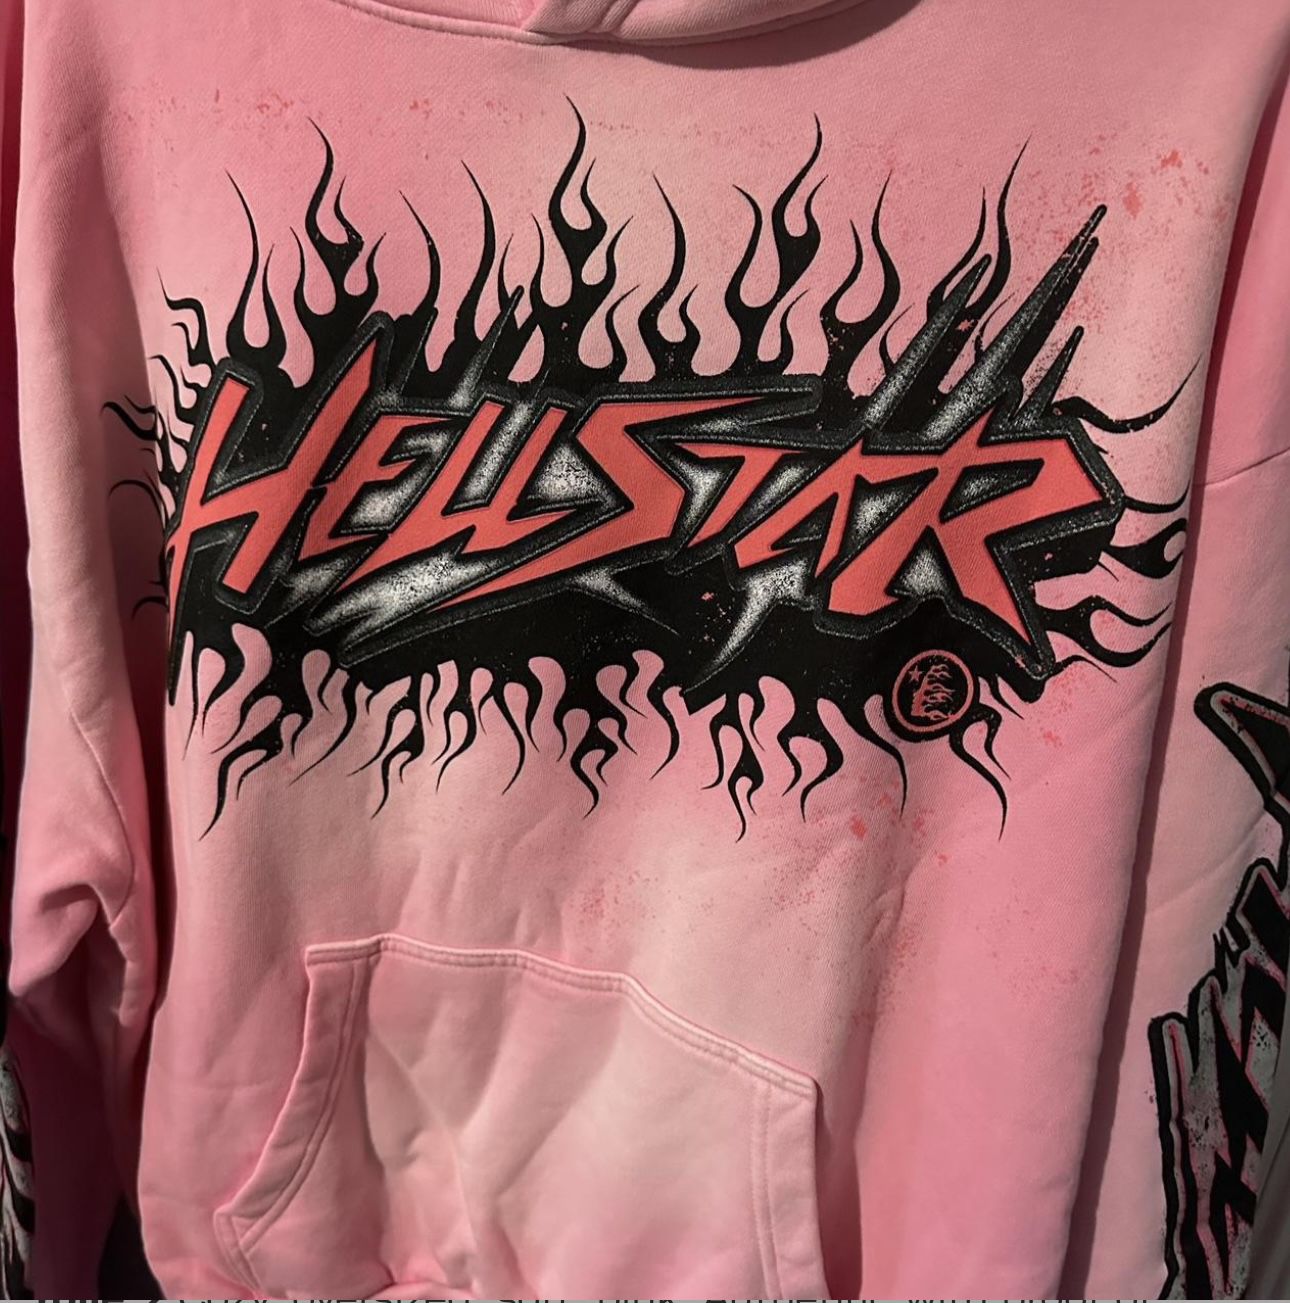 Hellstar Capsule 10 Pink Hoodie 